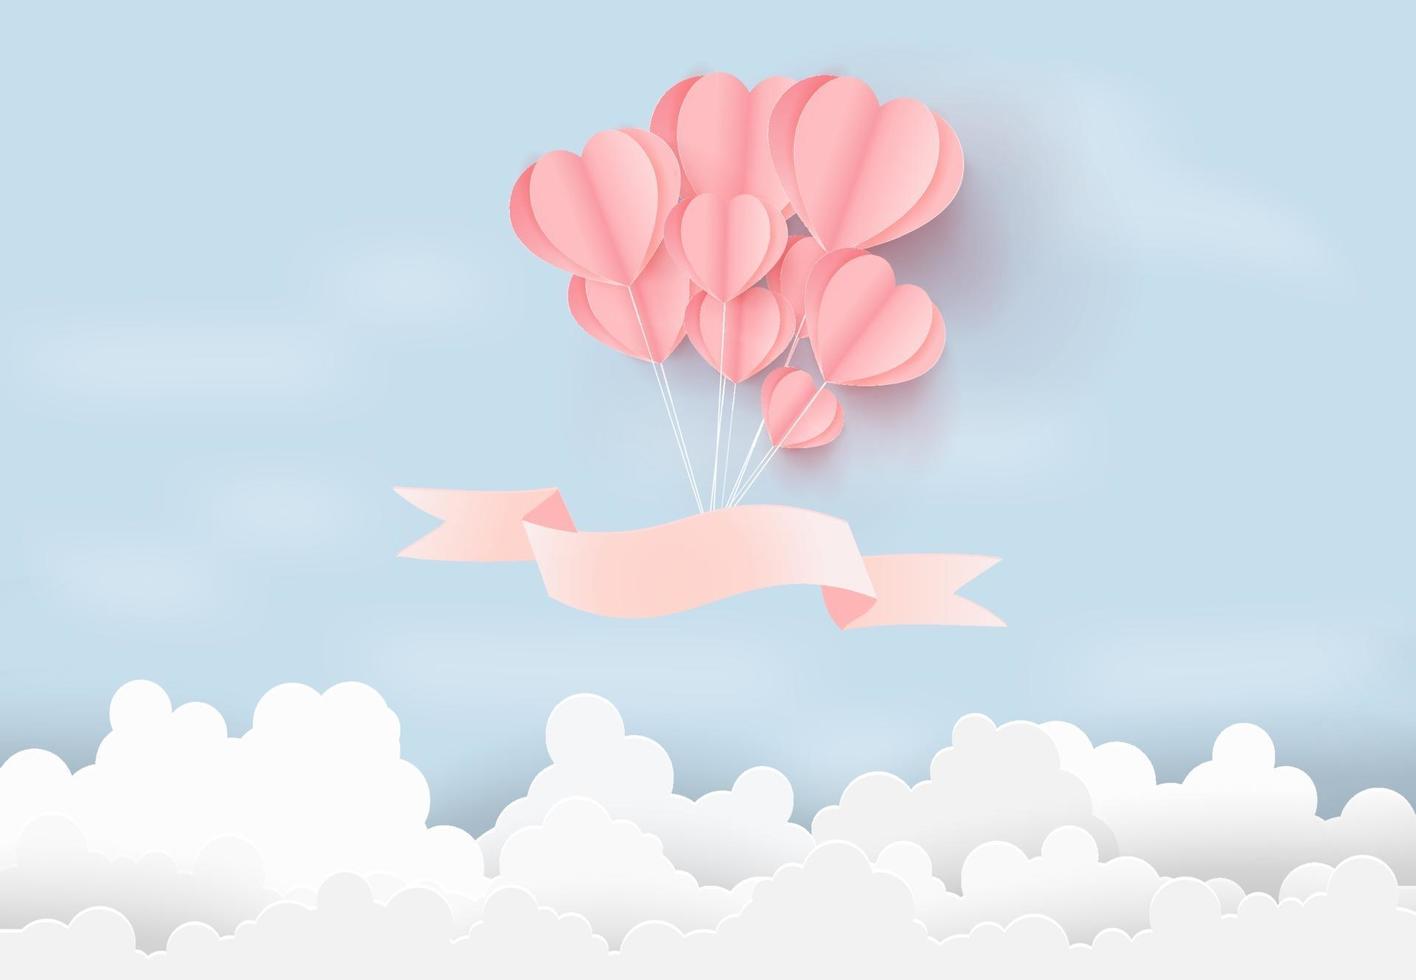 illustratie voor liefde met hart ballonnen zwevend in de lucht, Valentijnsdag concept. papier kunststijl. vector